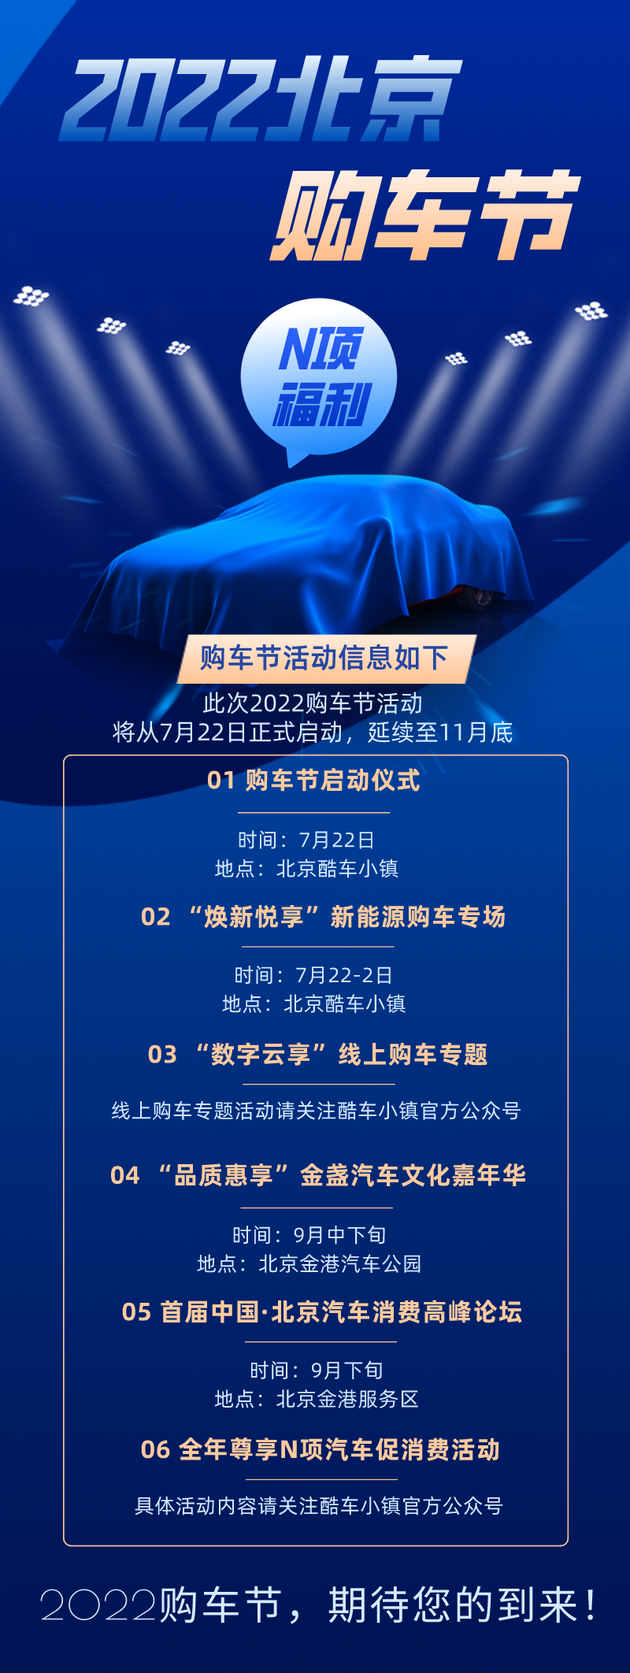 2022北京购车节，7月22日让我们相约酷车小镇